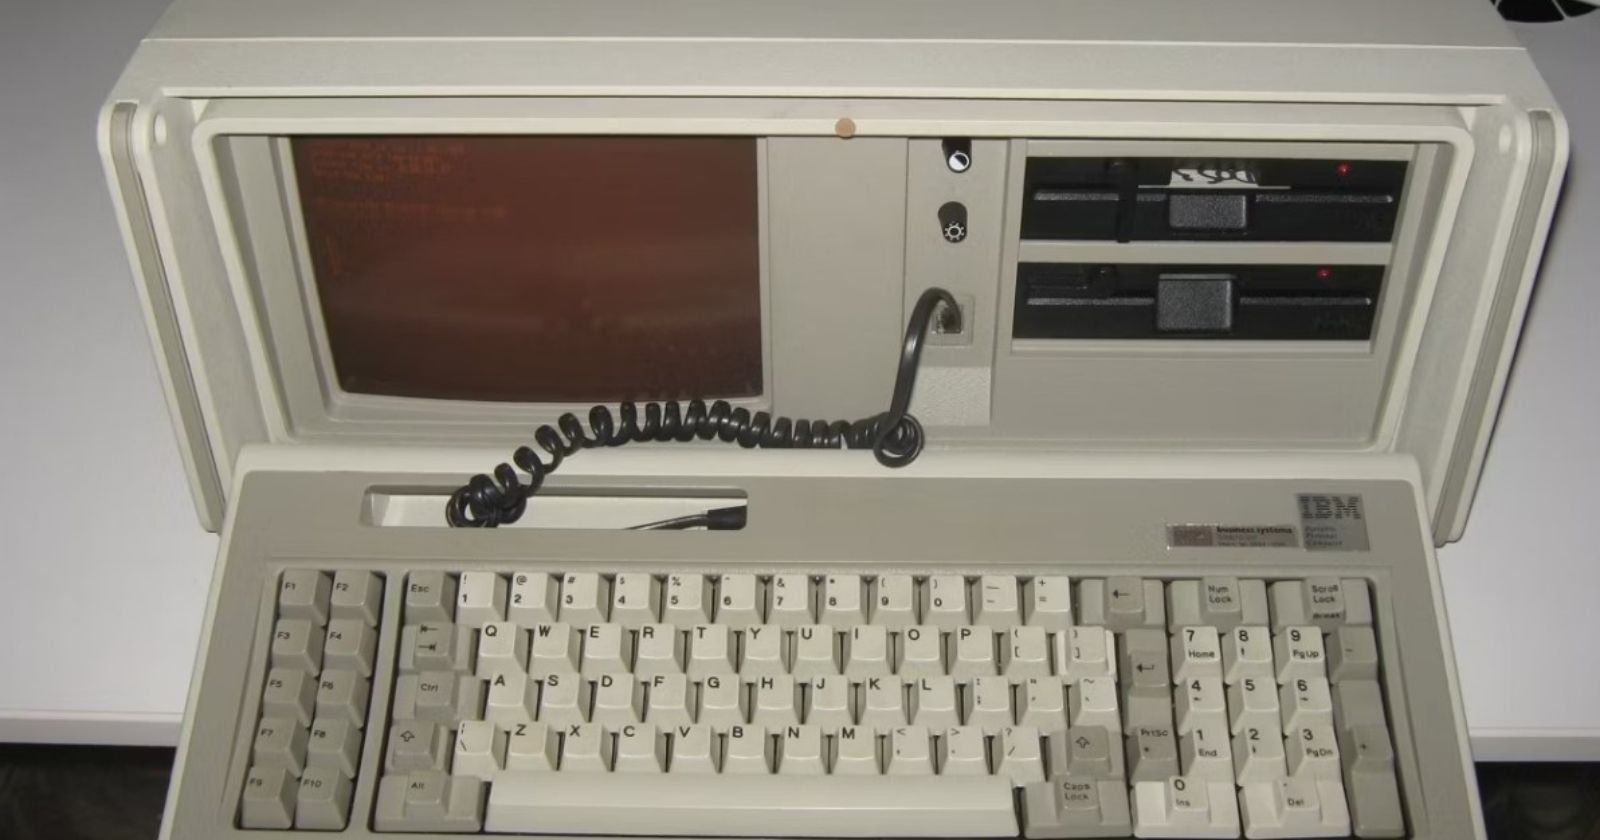 IBM Portable Computer özellikleri ve hikayesi!